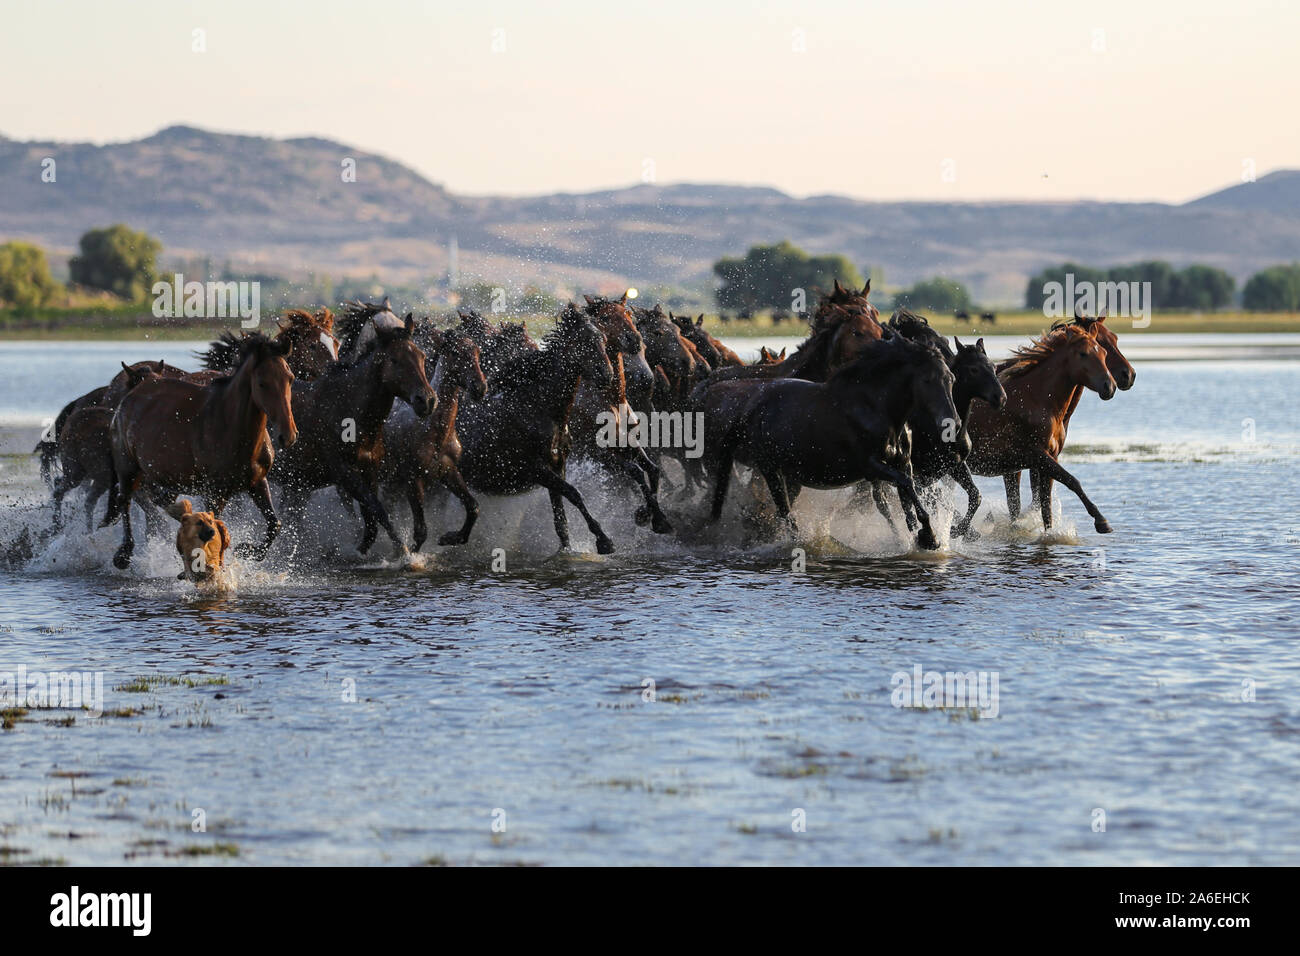 Yilki Horses Running in Water, Kayseri City, Turkey Stock Photo